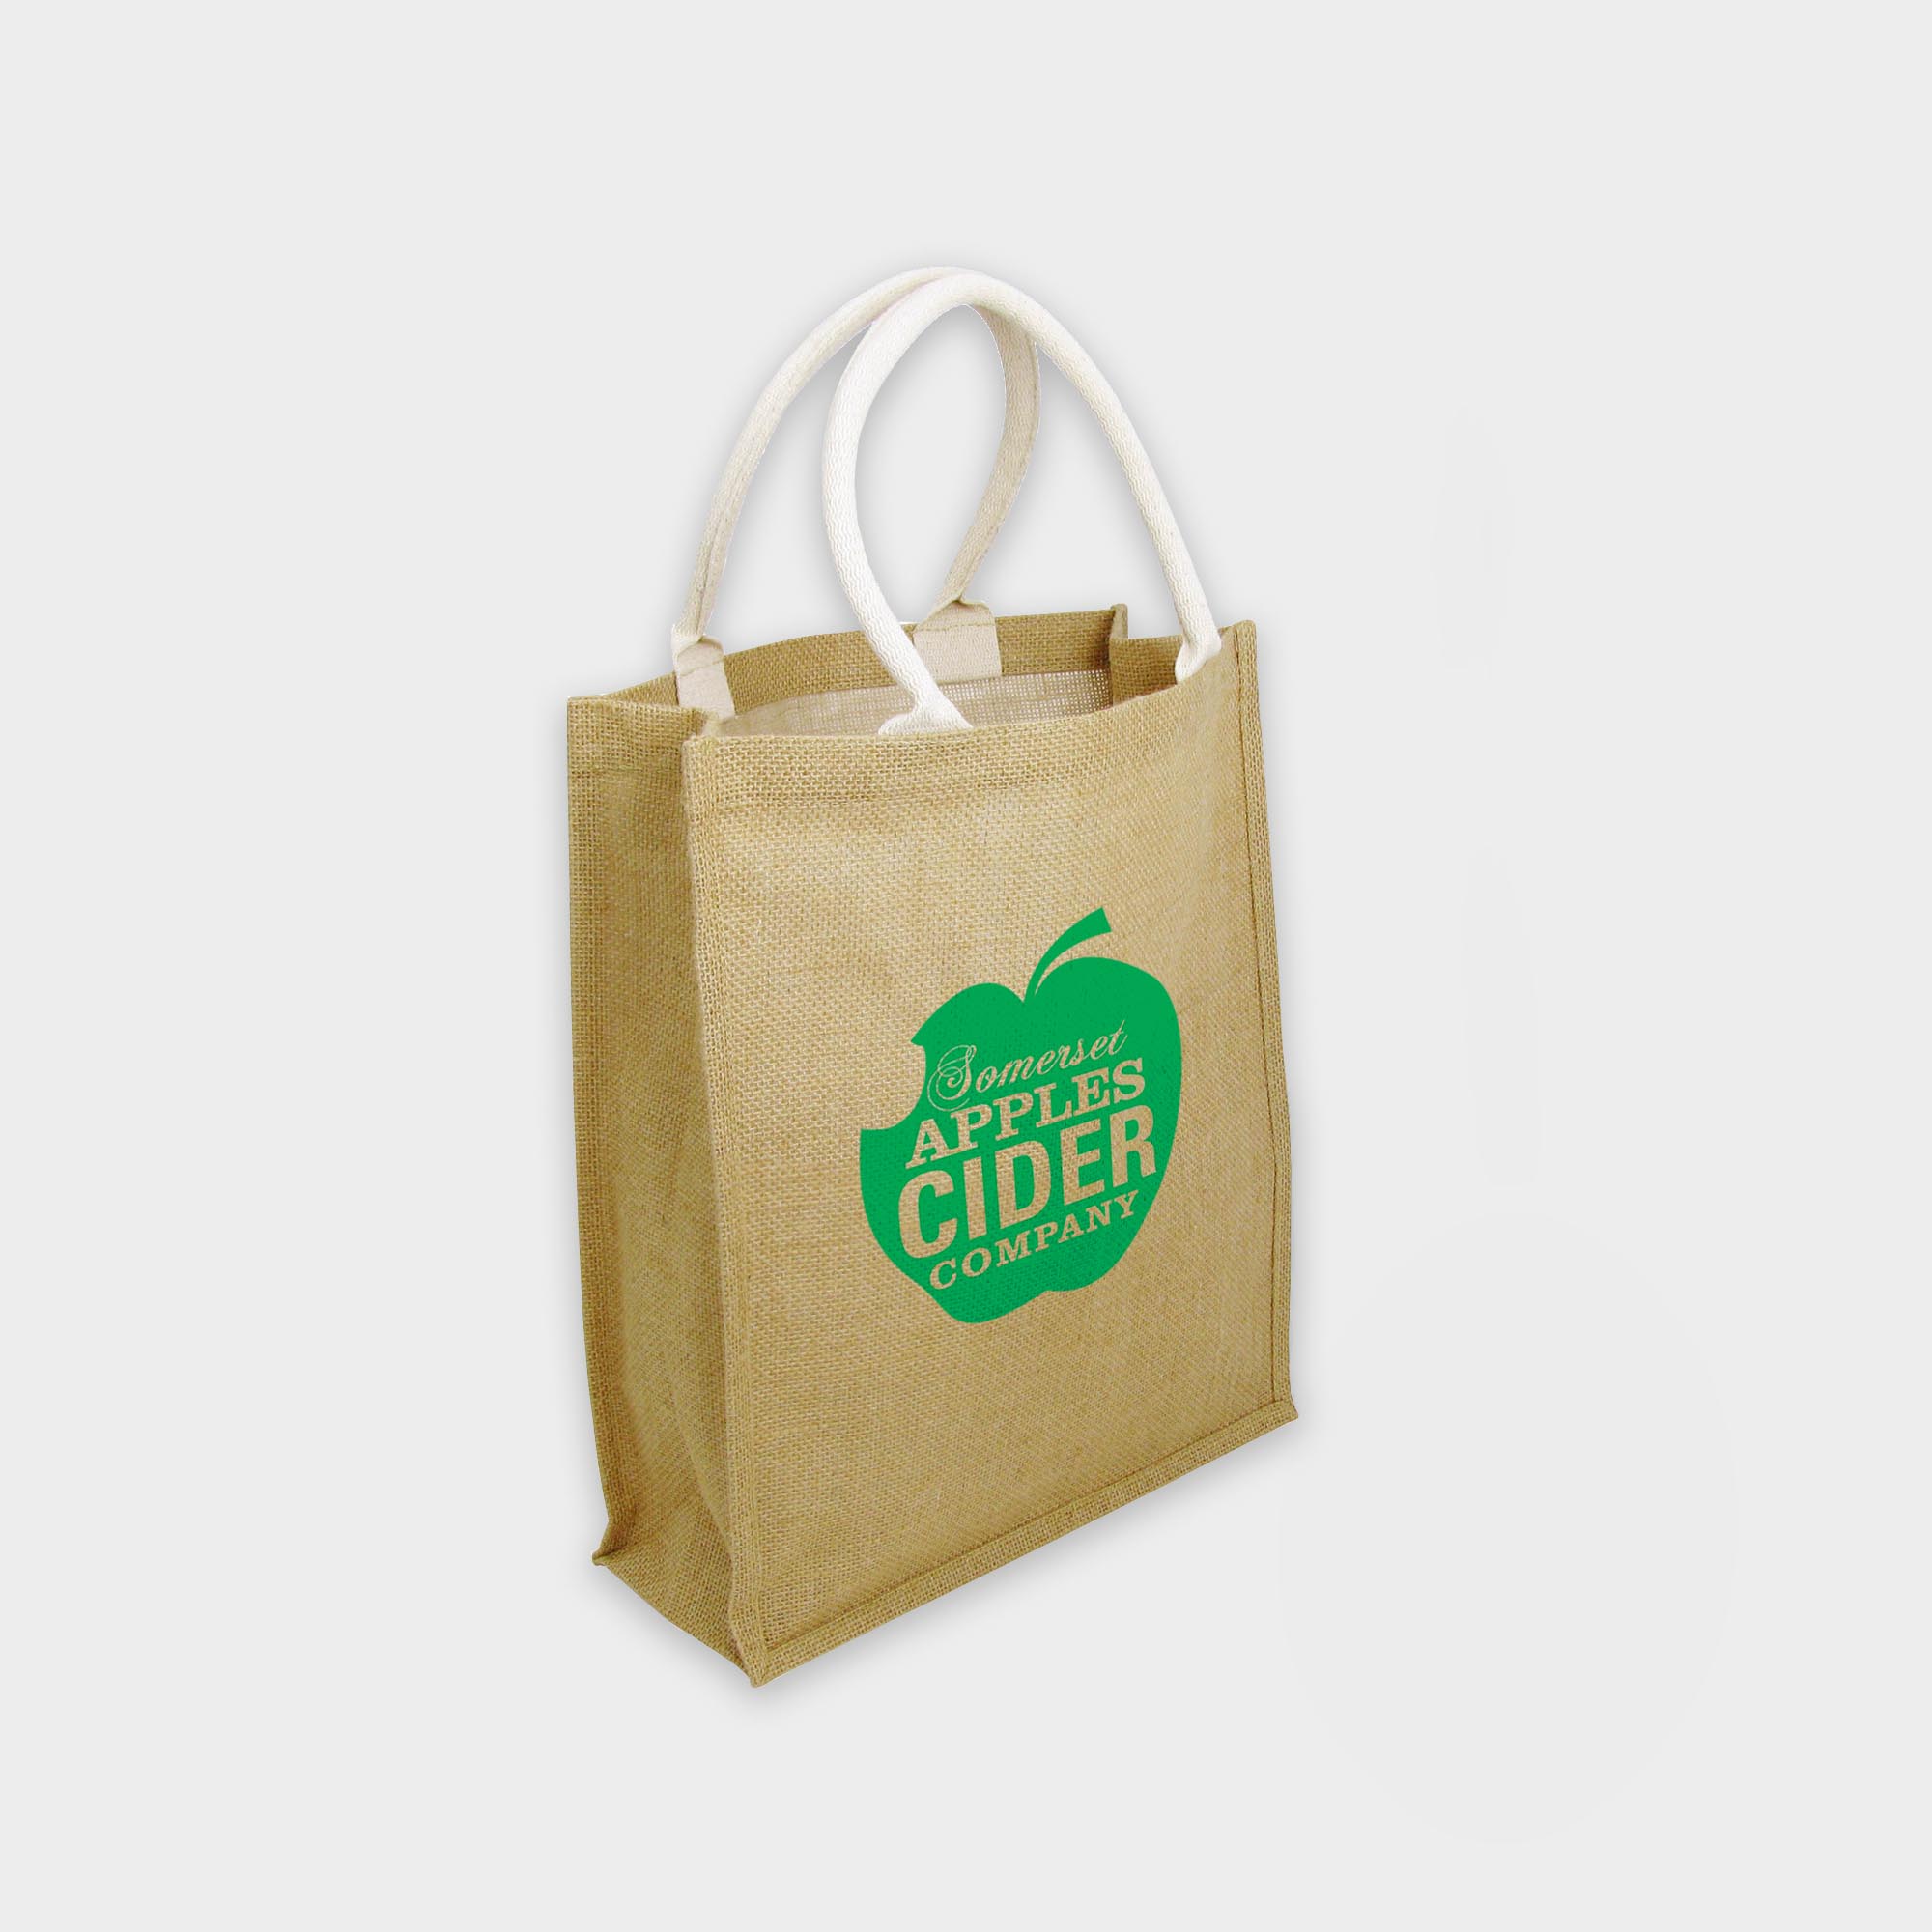 Die Green & Good Tasche aus Jute mit gewebten Baumwoll-Henkeln. Die Tasche ist innen mit abwischbarem Kunststoff ausgekleidet